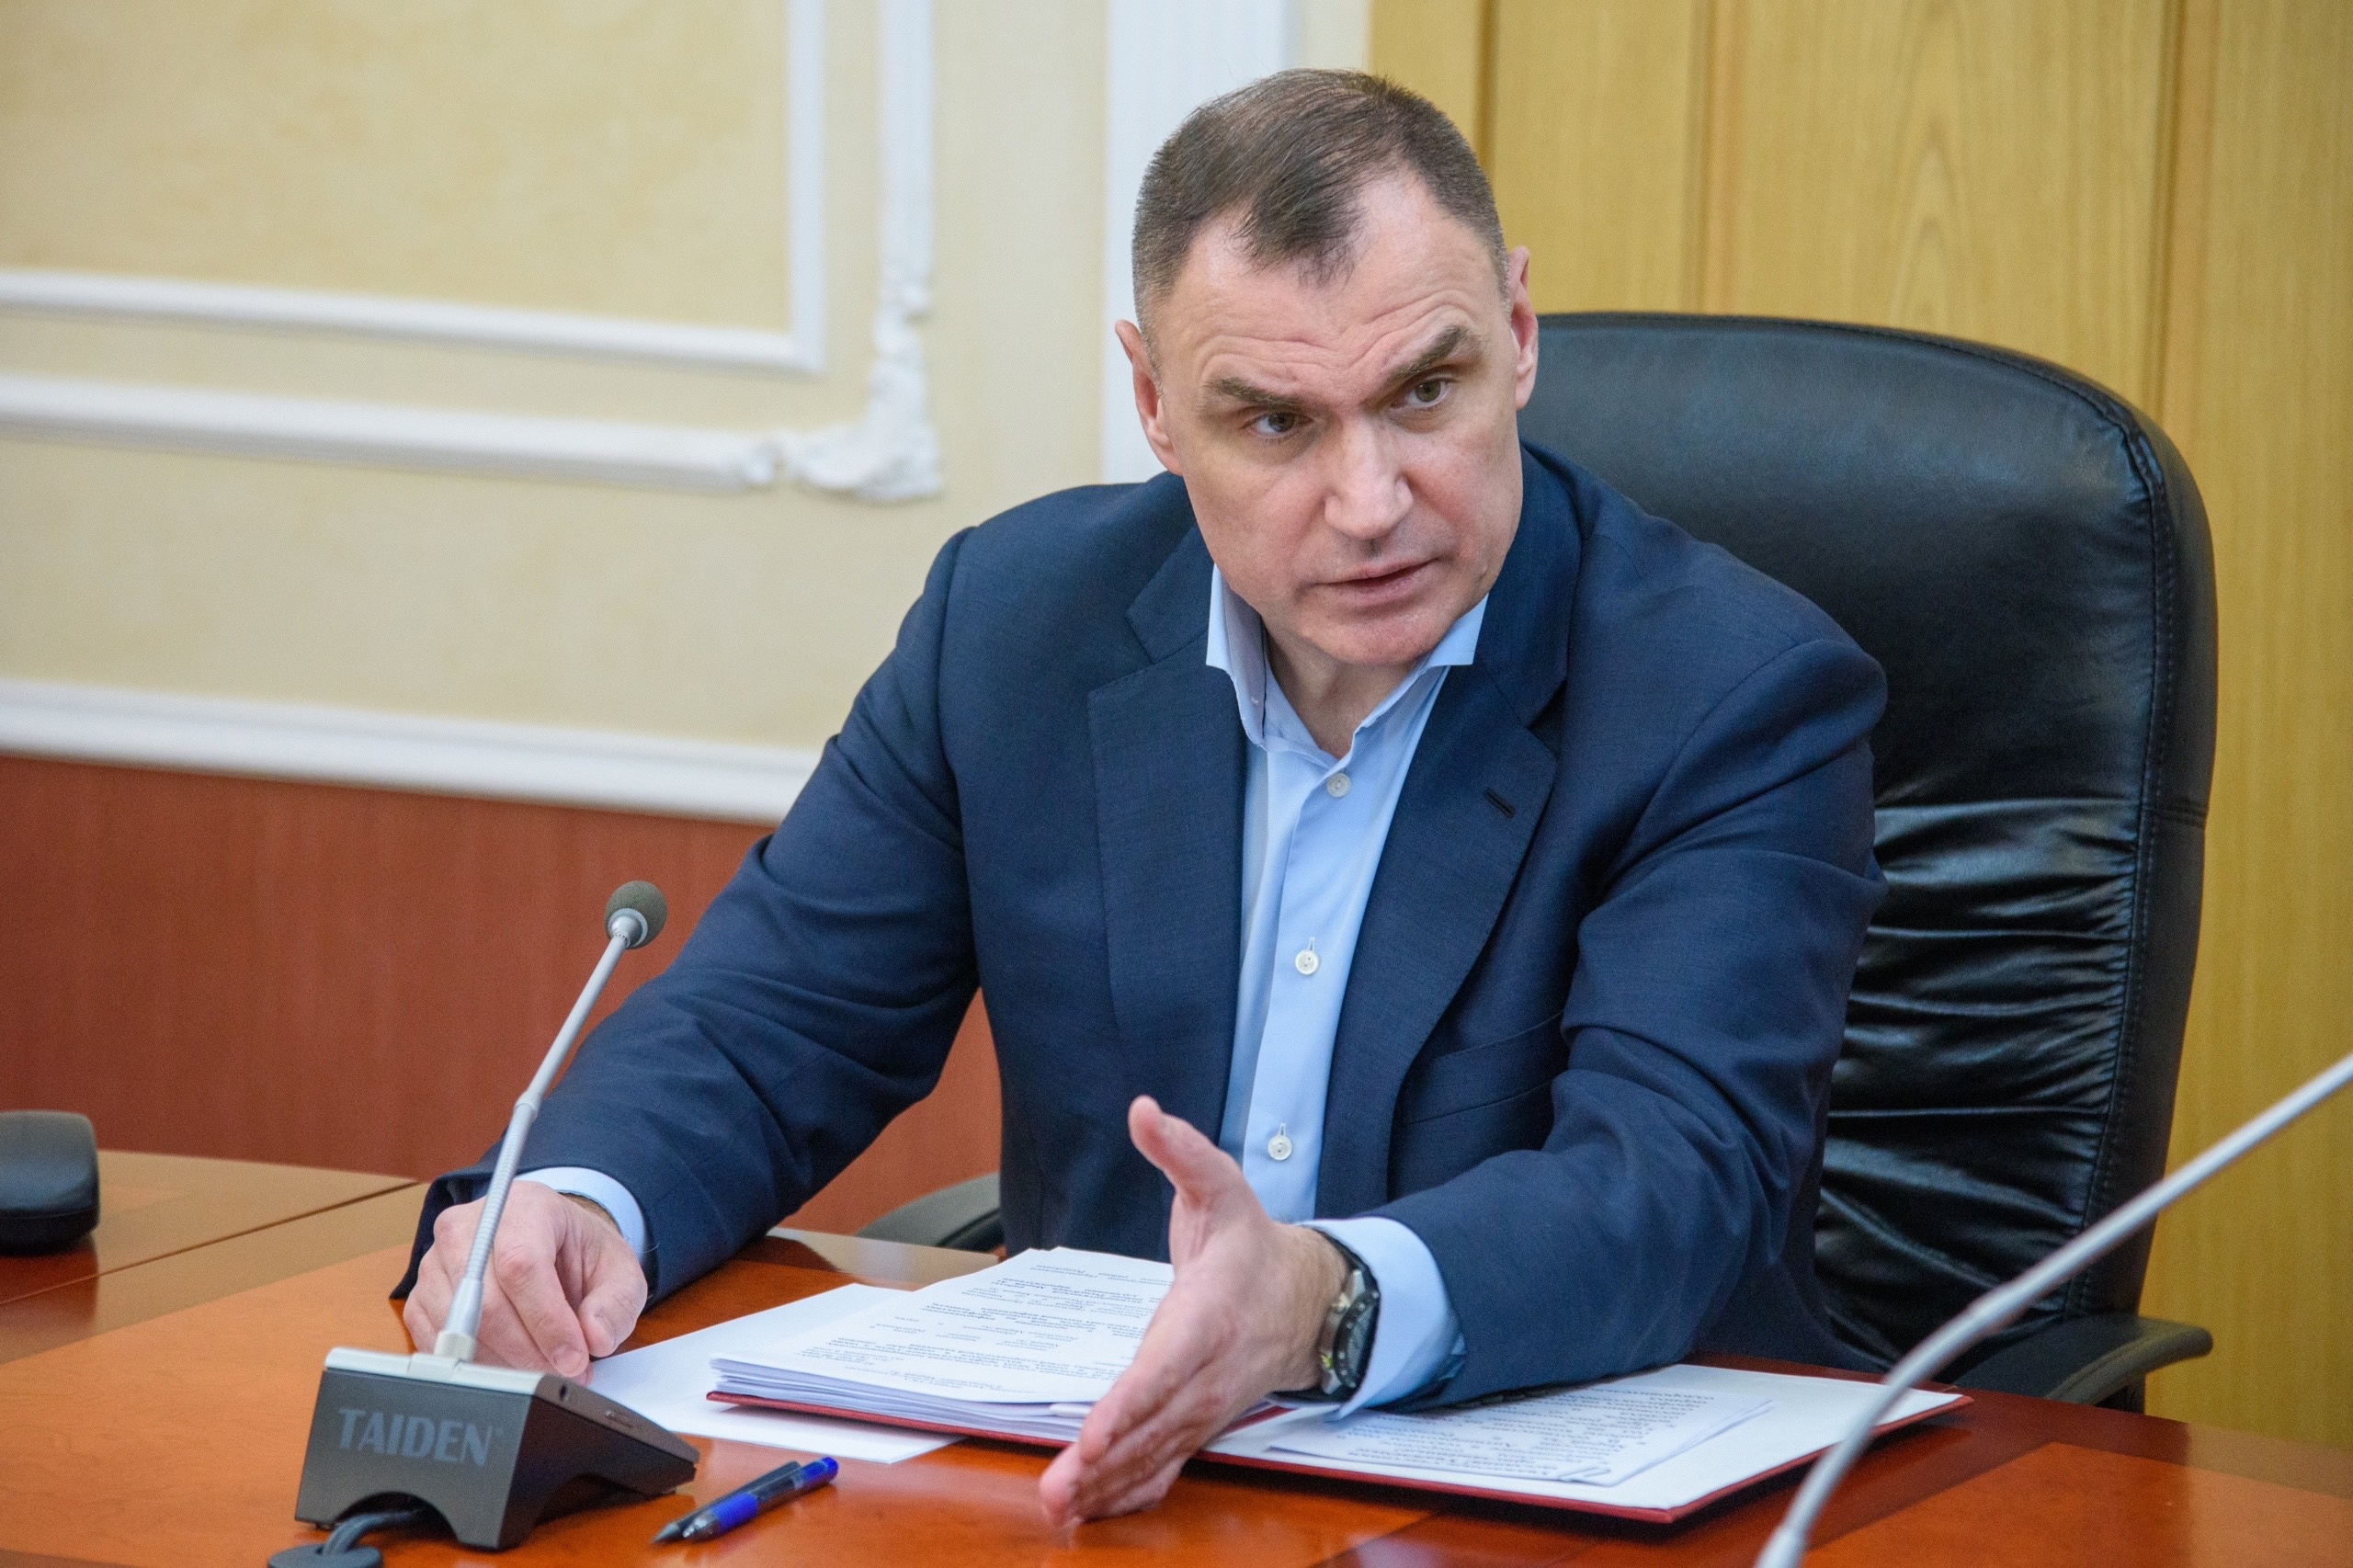 Юрий Зайцев поздравил земляков с наступающим Новым годом: "Уделим внимание экономическим проблемам"